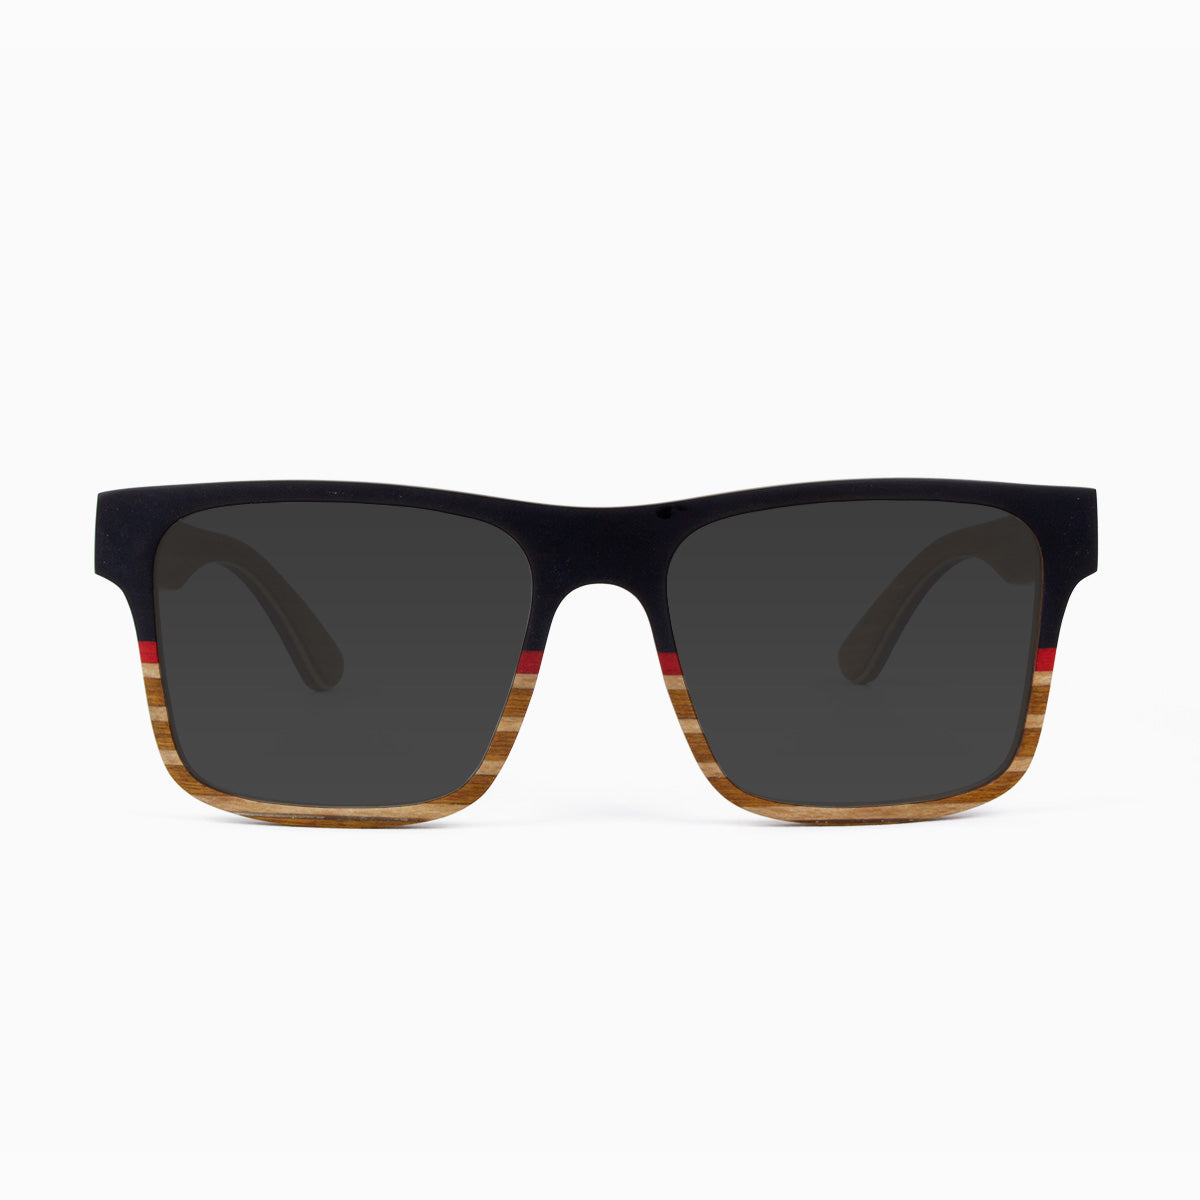 Sebastian - Maritime Wood Sunglasses